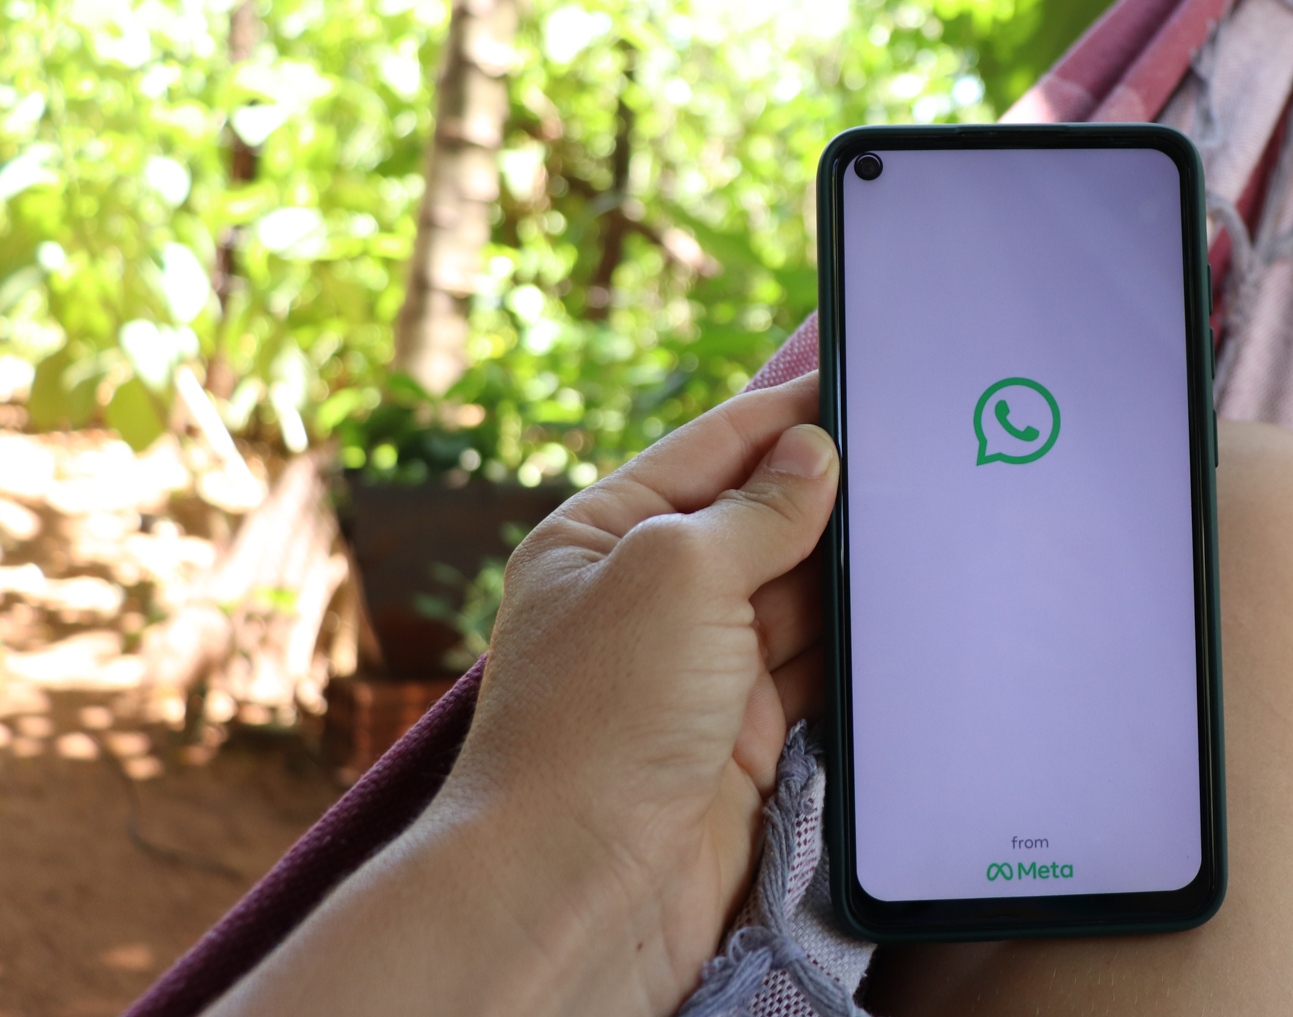 Mão segundo celular com logo do WhatsApp na tela.